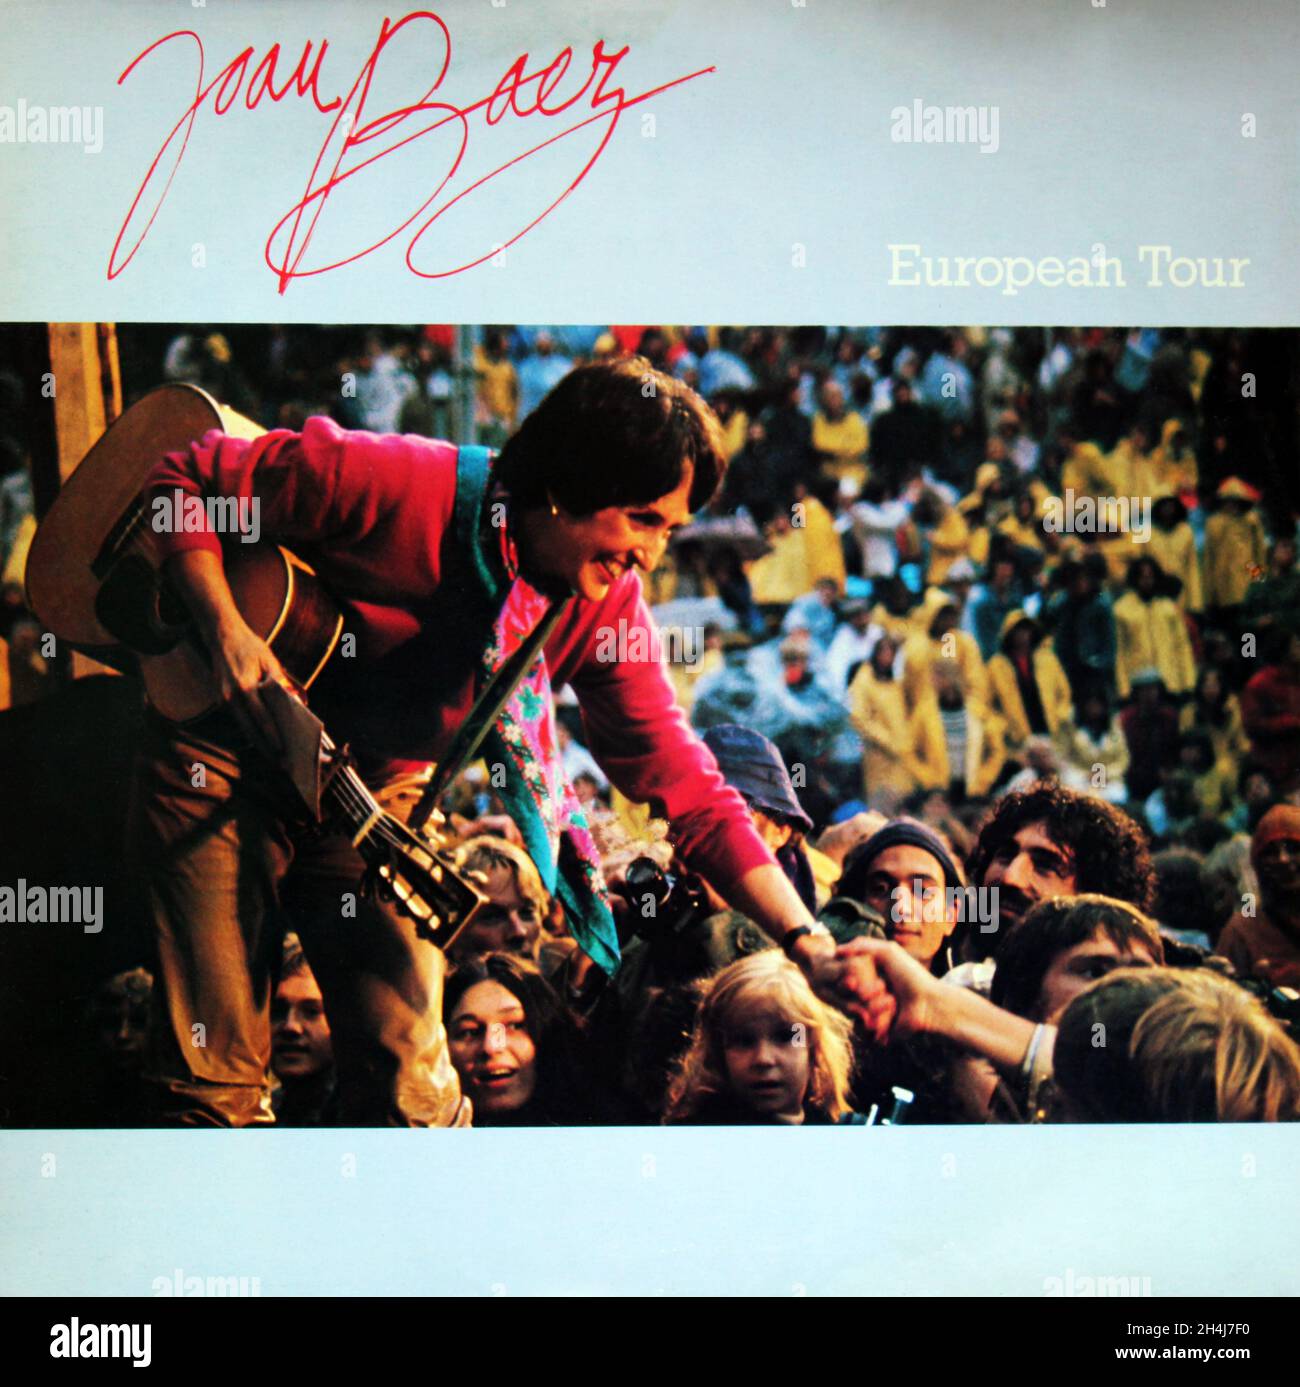 Joan Baez: 1980. LP front cover: European Tour Stock Photo